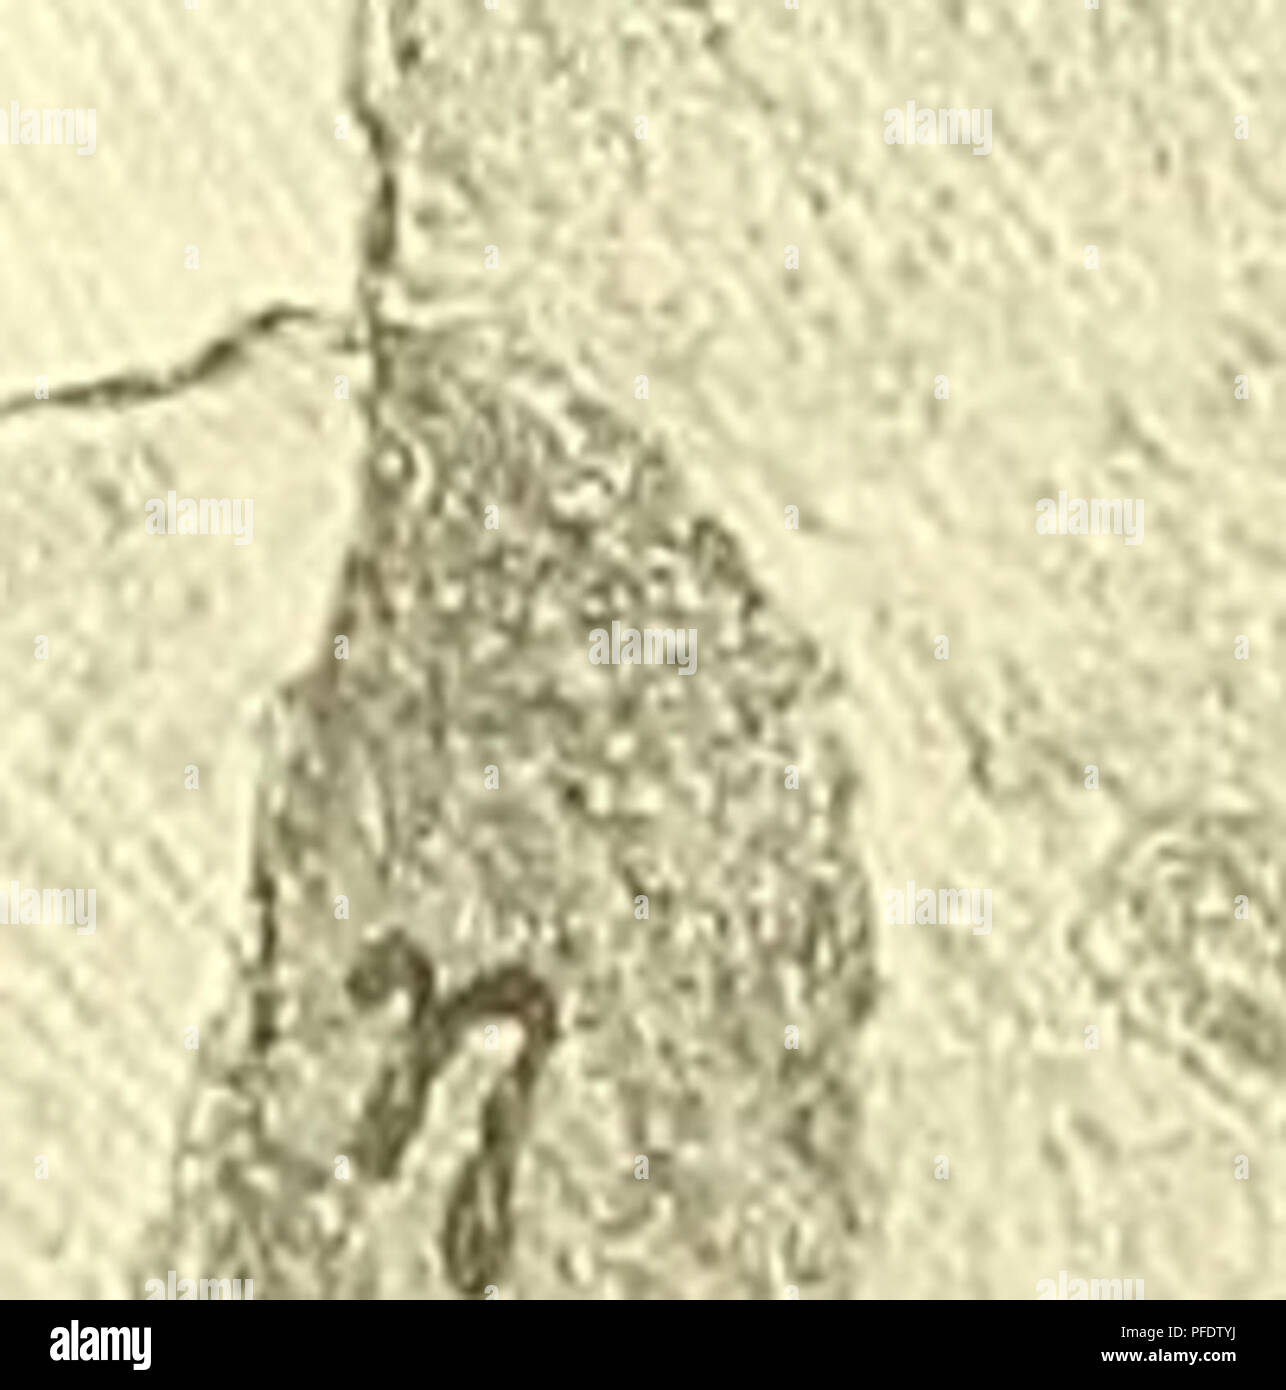 . Denkschriften - Österreichische Akademie der Wissenschaften. 568 B. Kuhart, einwandfrei feststellen, daß erst in der auf den Schnitt C folgenden Steinplatte die Hauptverbindung zwischen Calopteris dubia und dem Chorionopteris-^a.t.e. bestanden haben mag. Es ist naheliegend, daß die Rhachis schon knapp »vor der Verbindung mit dem Blatte« ^ eine Anschwellung ausbildet und in diesem Sinne könnten wir das Bild von der Schnittfläche A verstehen. Im Schnitte C (Photo 27, Taf. IV) finden wir knapp am Rande des Steines ein Stück des vermutlichen Sorus -rj. Auch die eine Seite von Calopteris dubia  Stock Photo